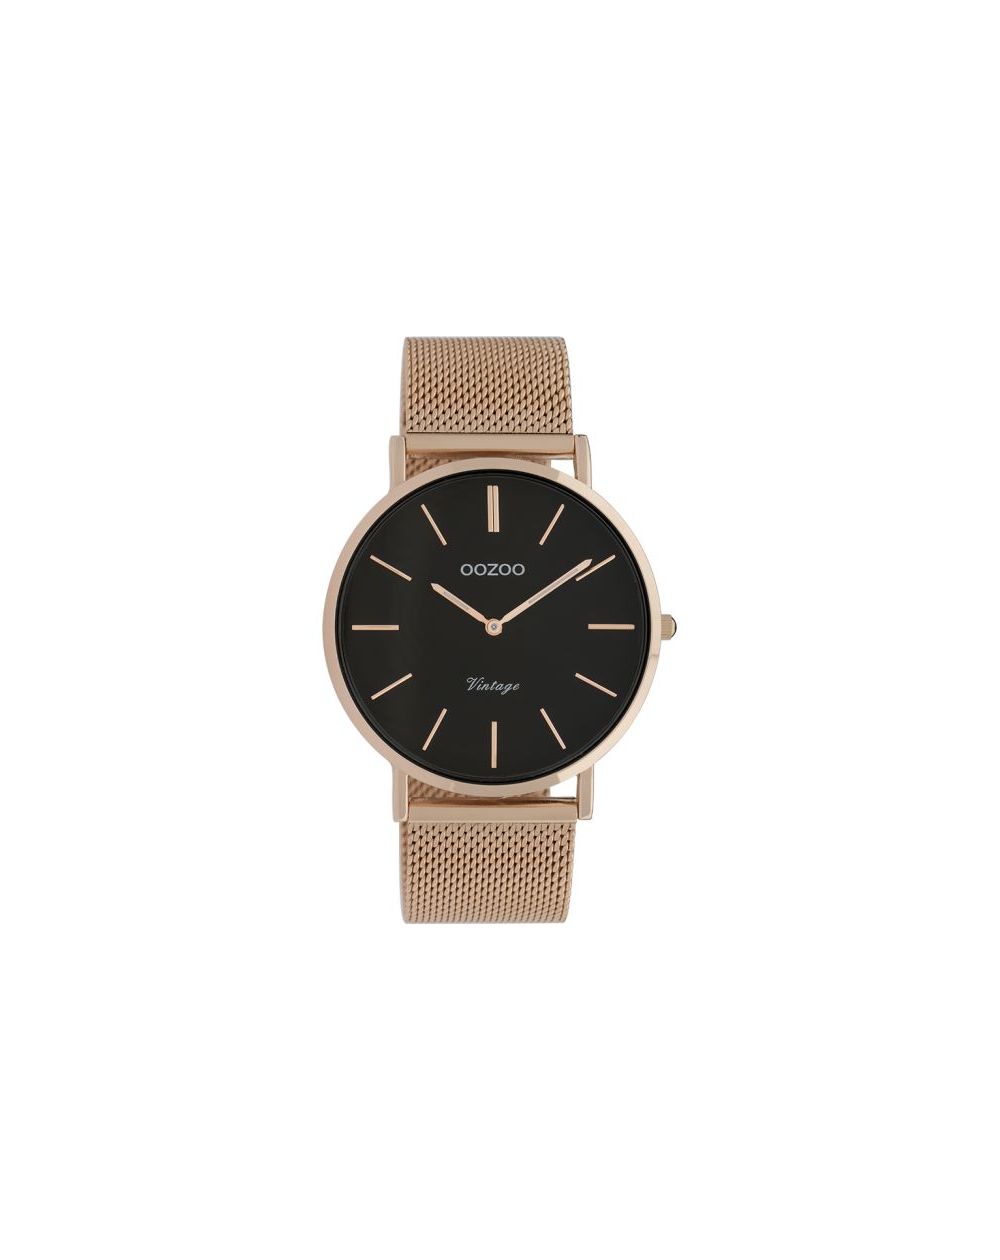 Oozoo montre/watch/horloge C9925